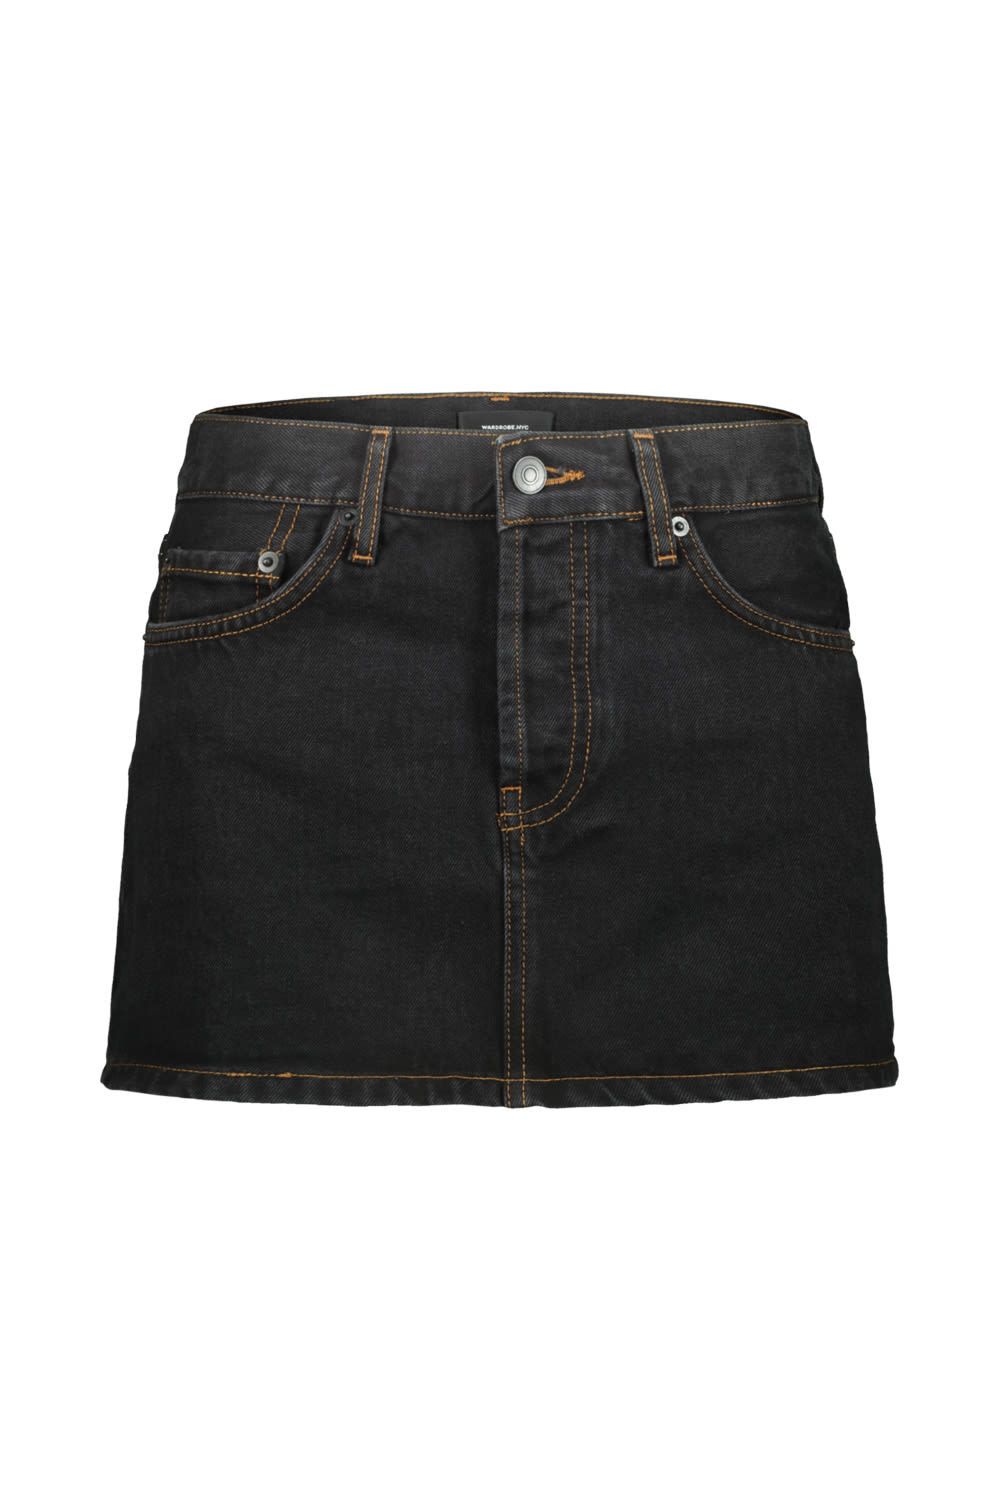 Wardrobe.nyc Micro Mini Denim Skirt In Blk Black